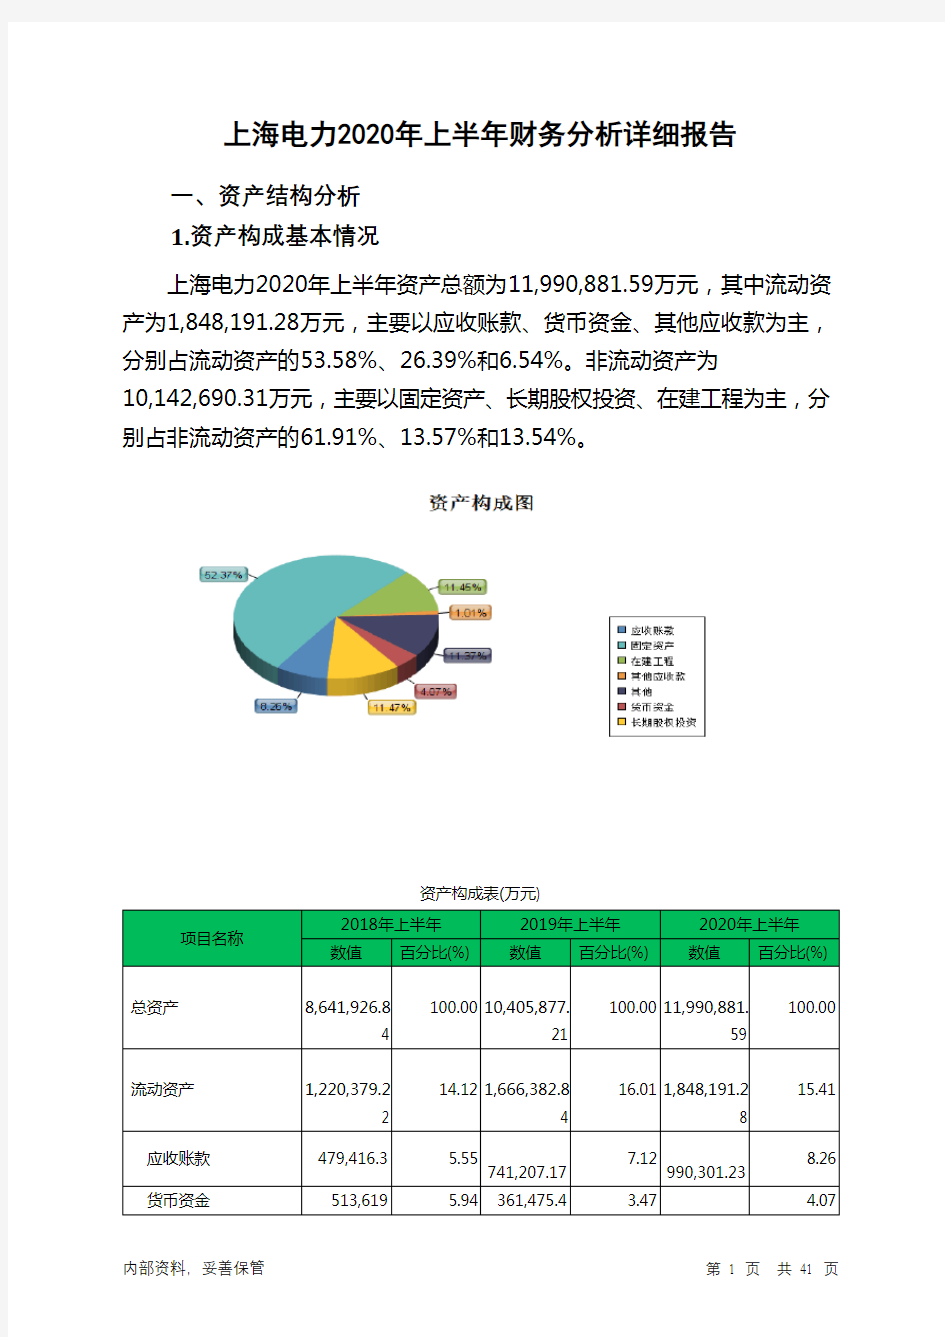 上海电力2020年上半年财务分析详细报告